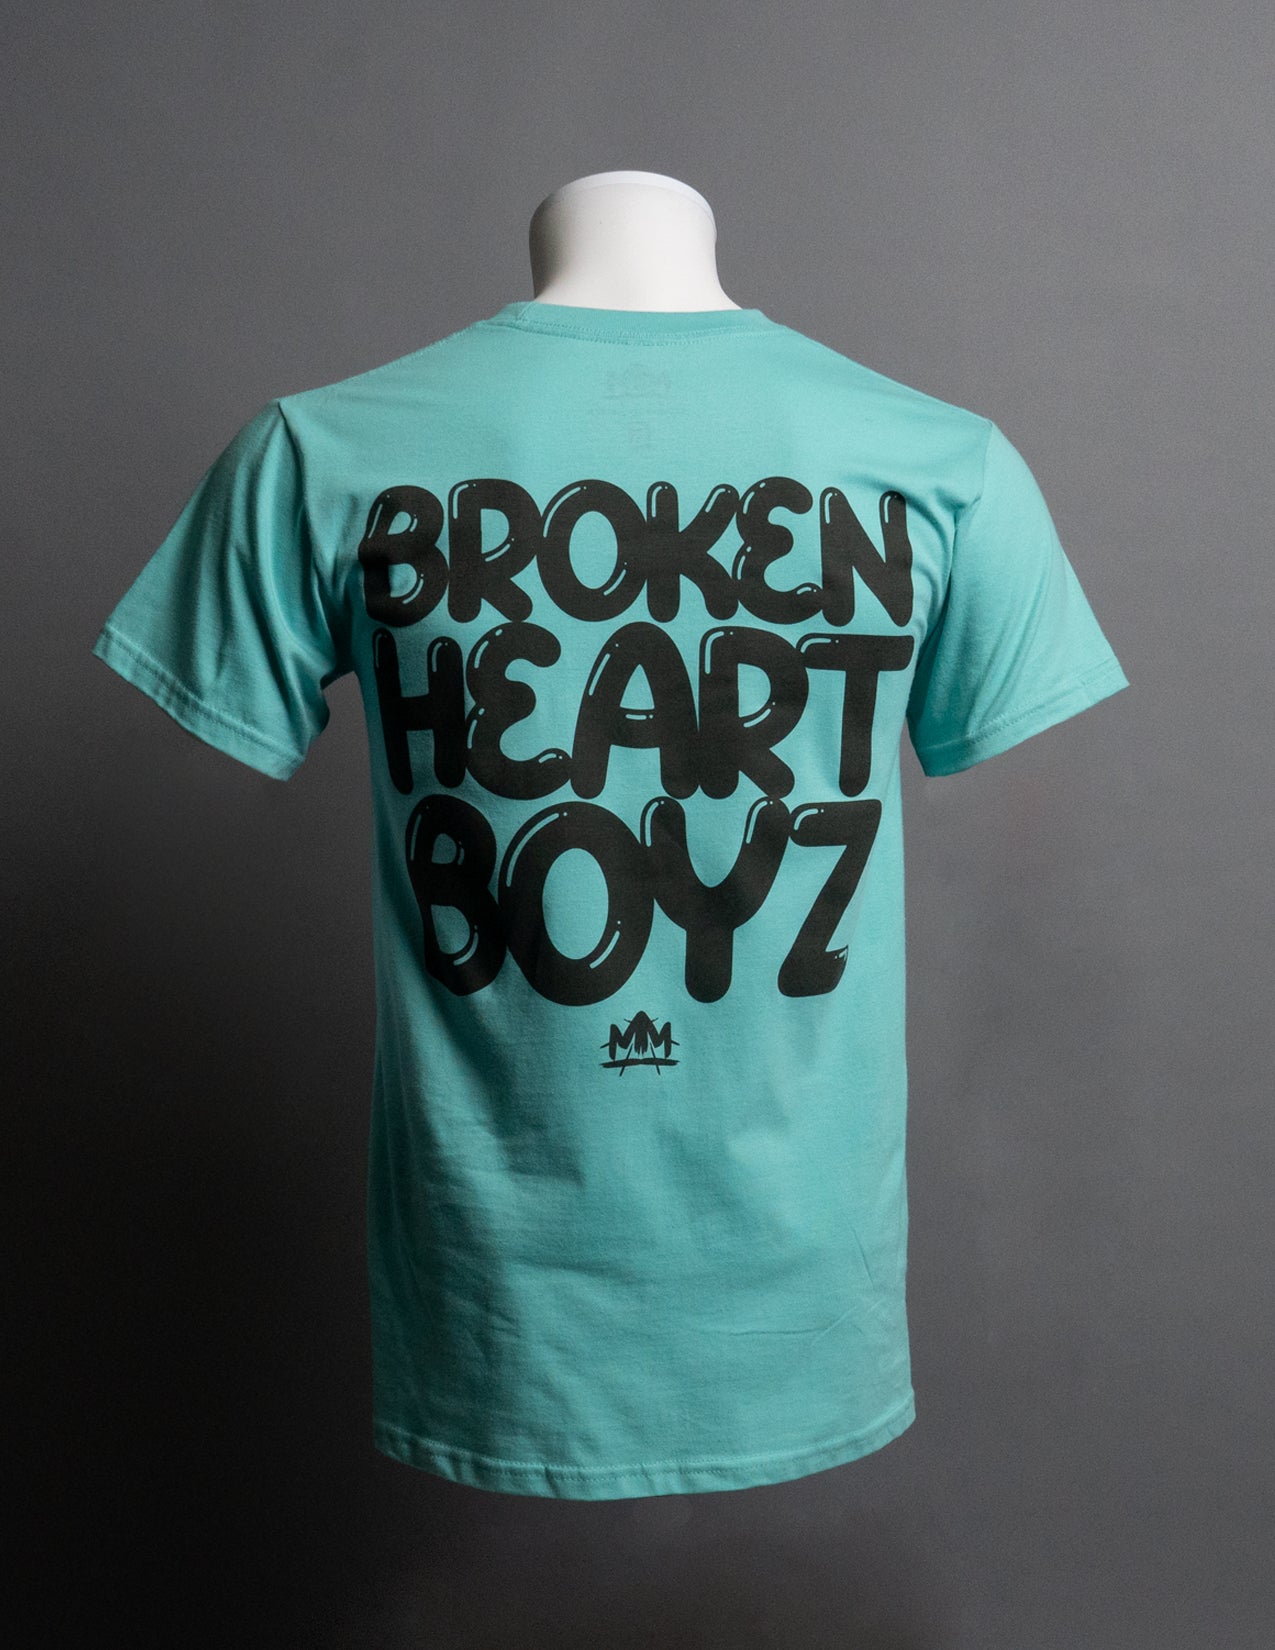 Broken Heart Boyz T-Shirt "Mint"